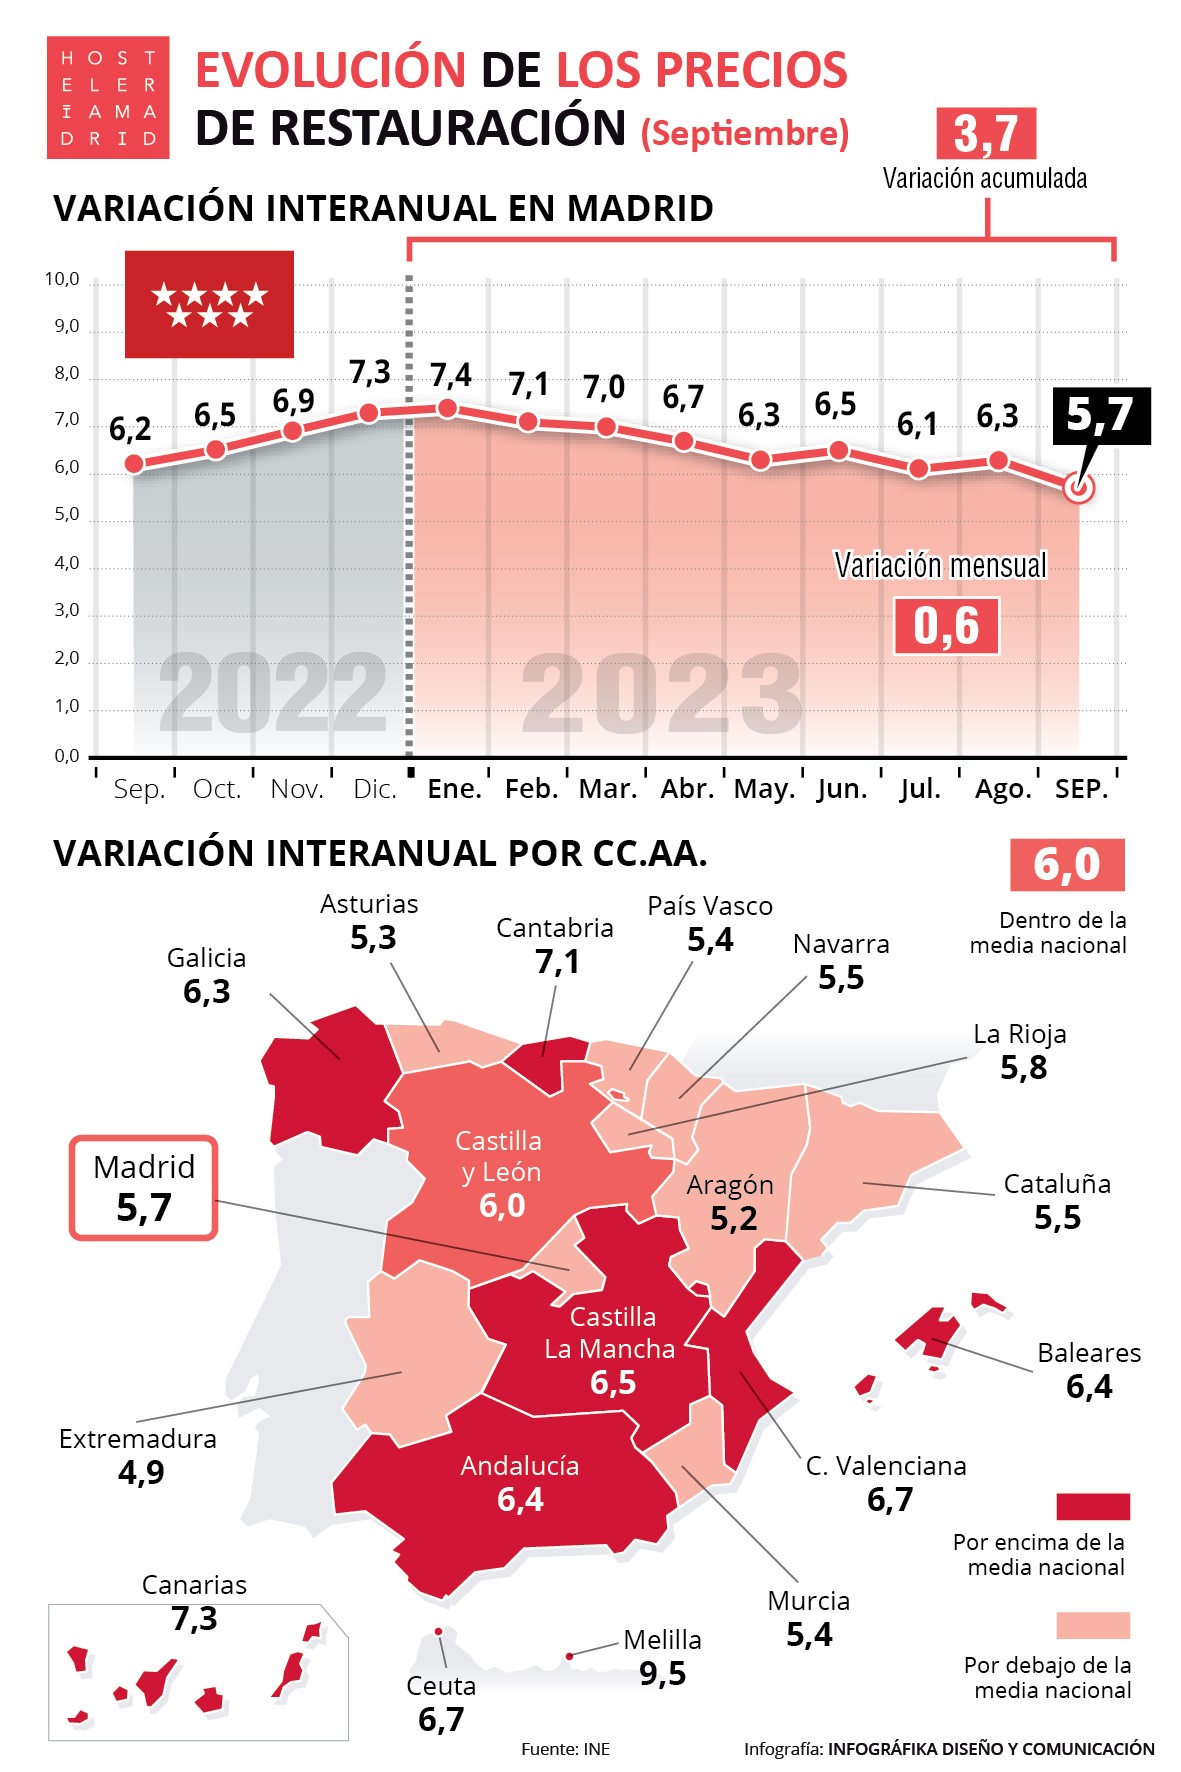 Los precios de restauración suben en Madrid un 5,7% en septiembre, tres décimas menos que la media nacional (6%) - La Viña